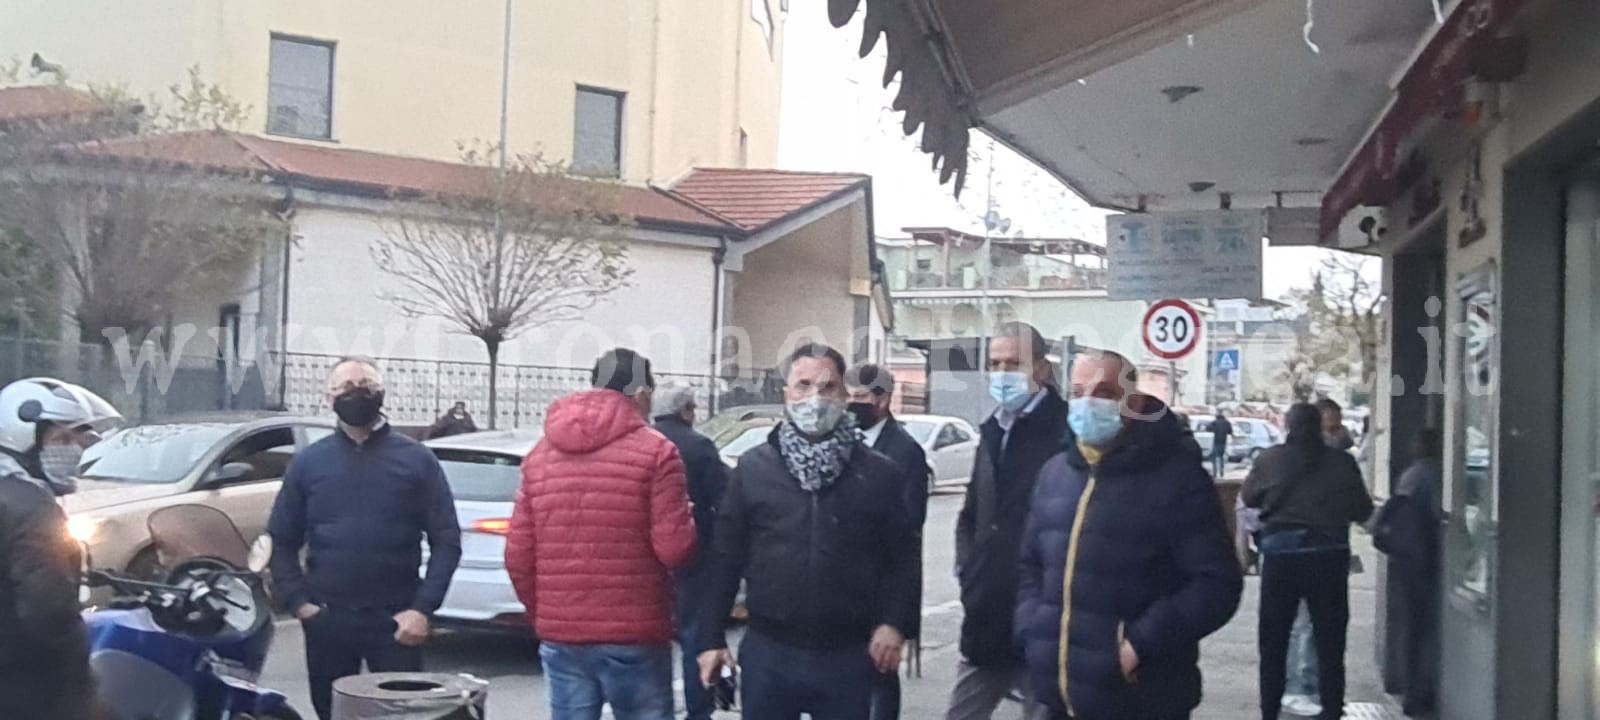 La protesta dei ristoratori di Pozzuoli non si ferma «Contro De Luca dittatore»